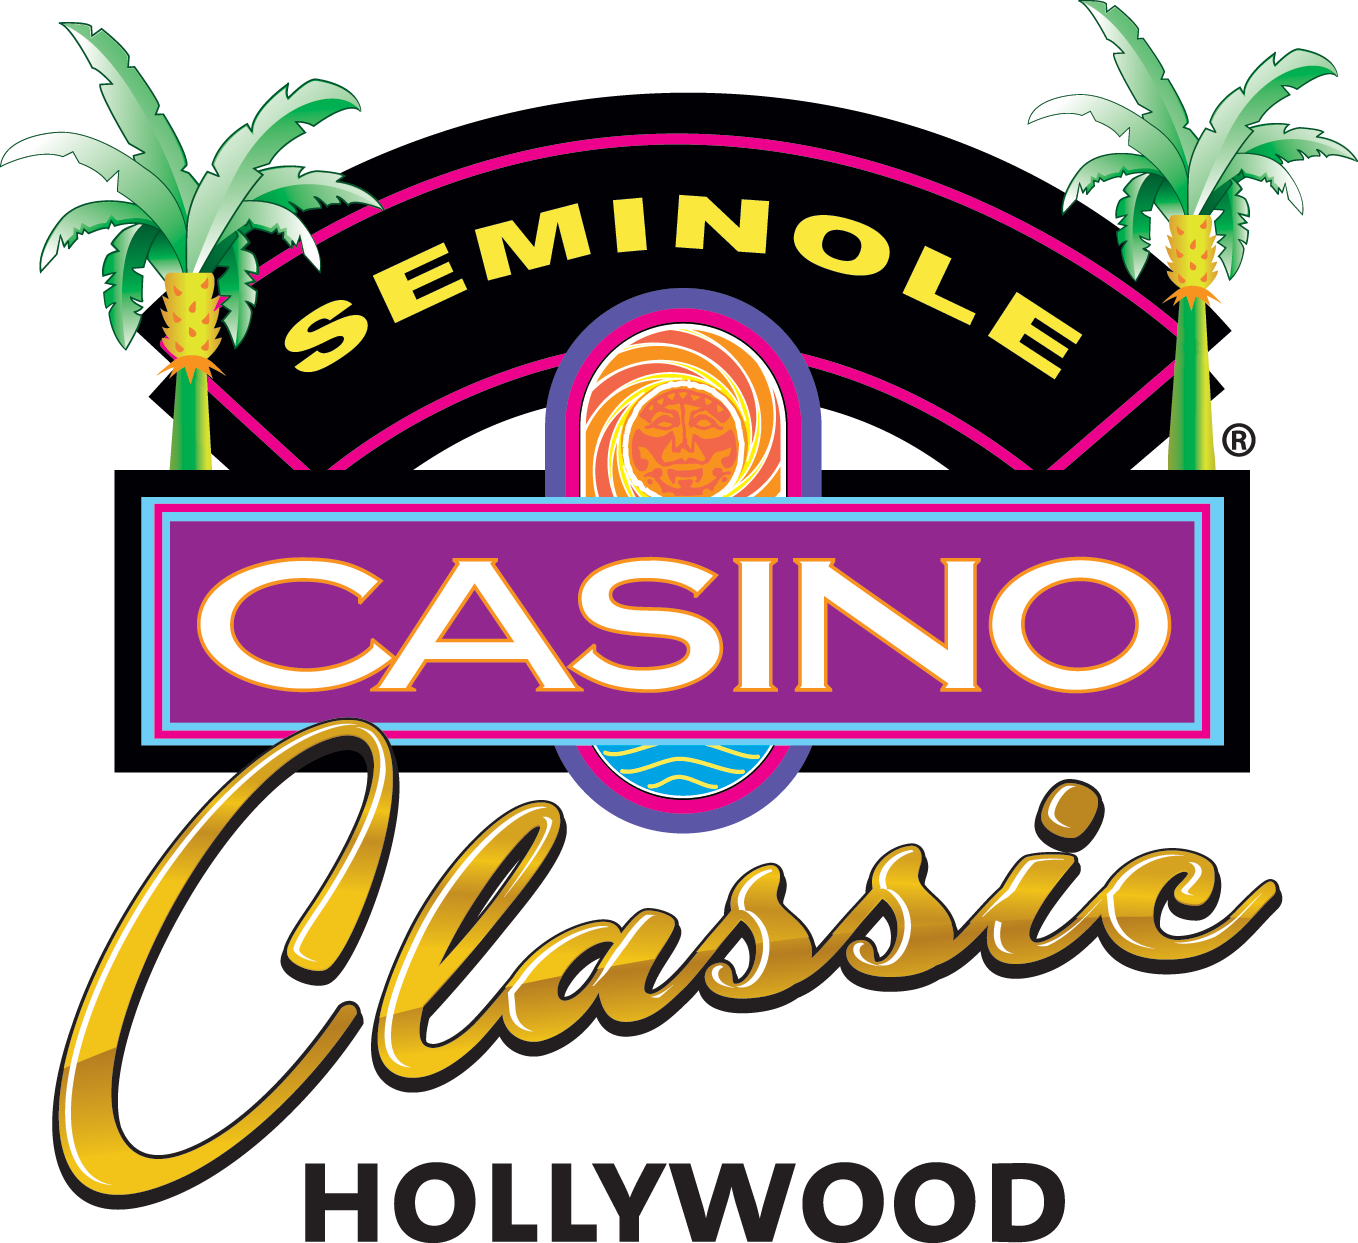 CCCCcccccc. Casino Seminole Classic (Nivel 4)